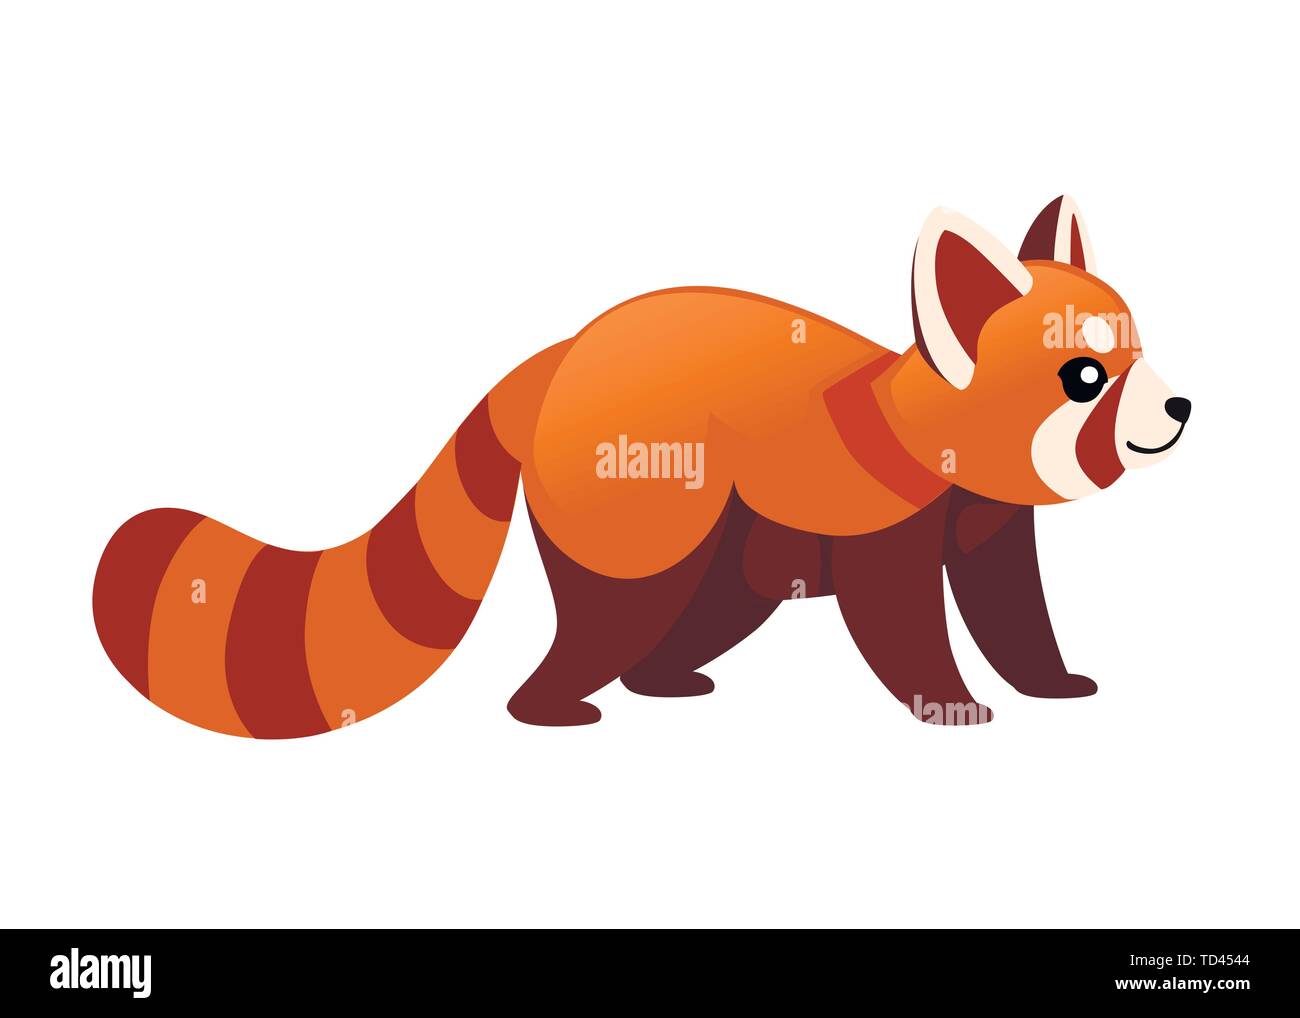 Cute adorable panda rouge design dessin animé télévision personnage animal  style vector illustration sur fond blanc Image Vectorielle Stock - Alamy